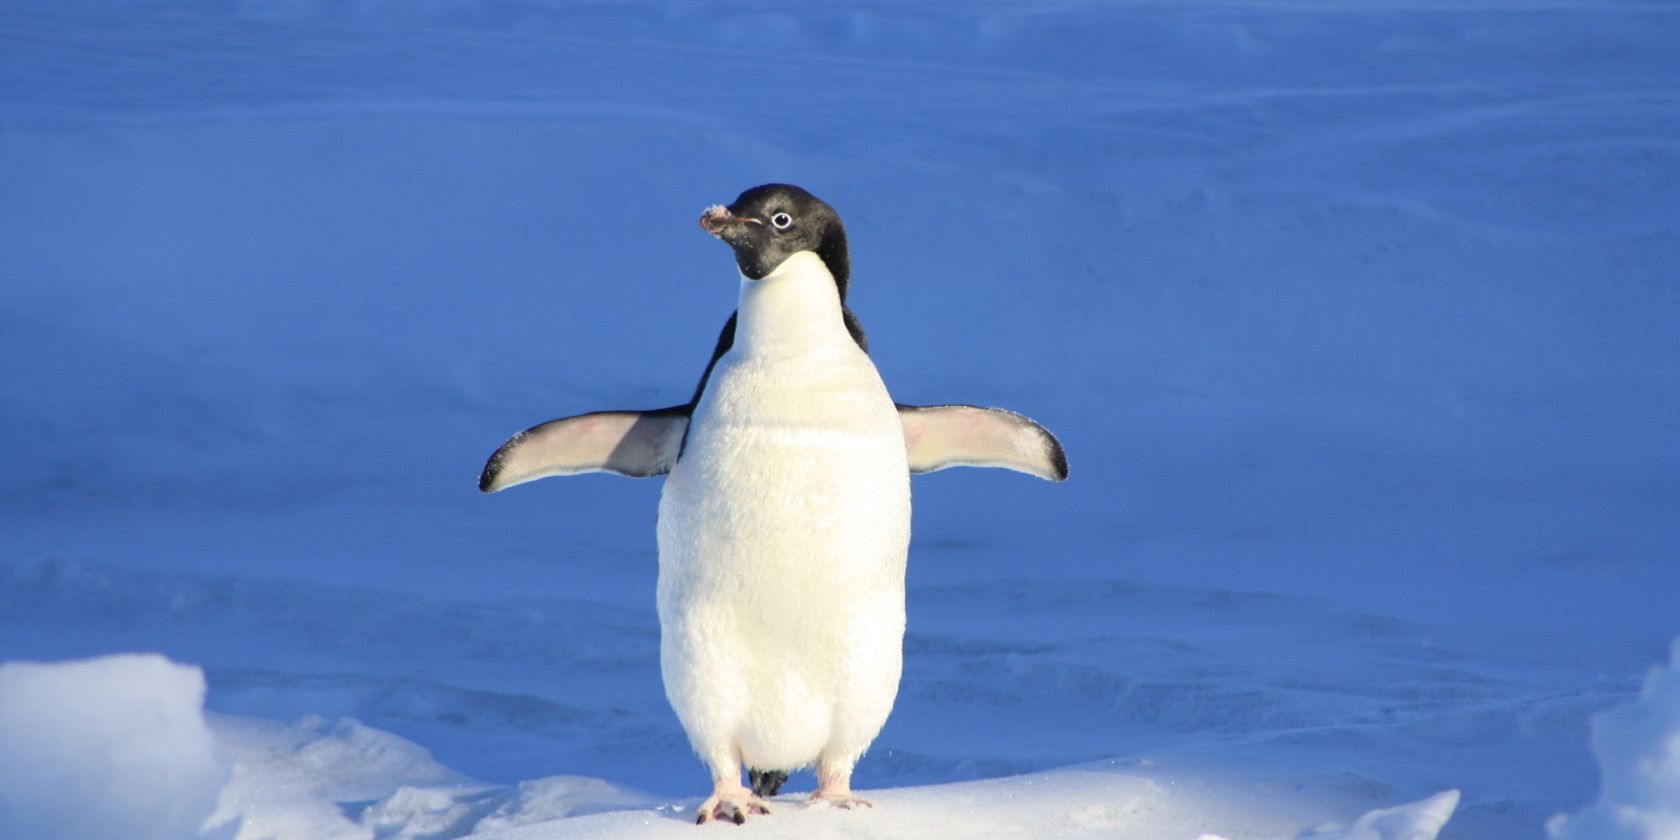 Penguin in snow